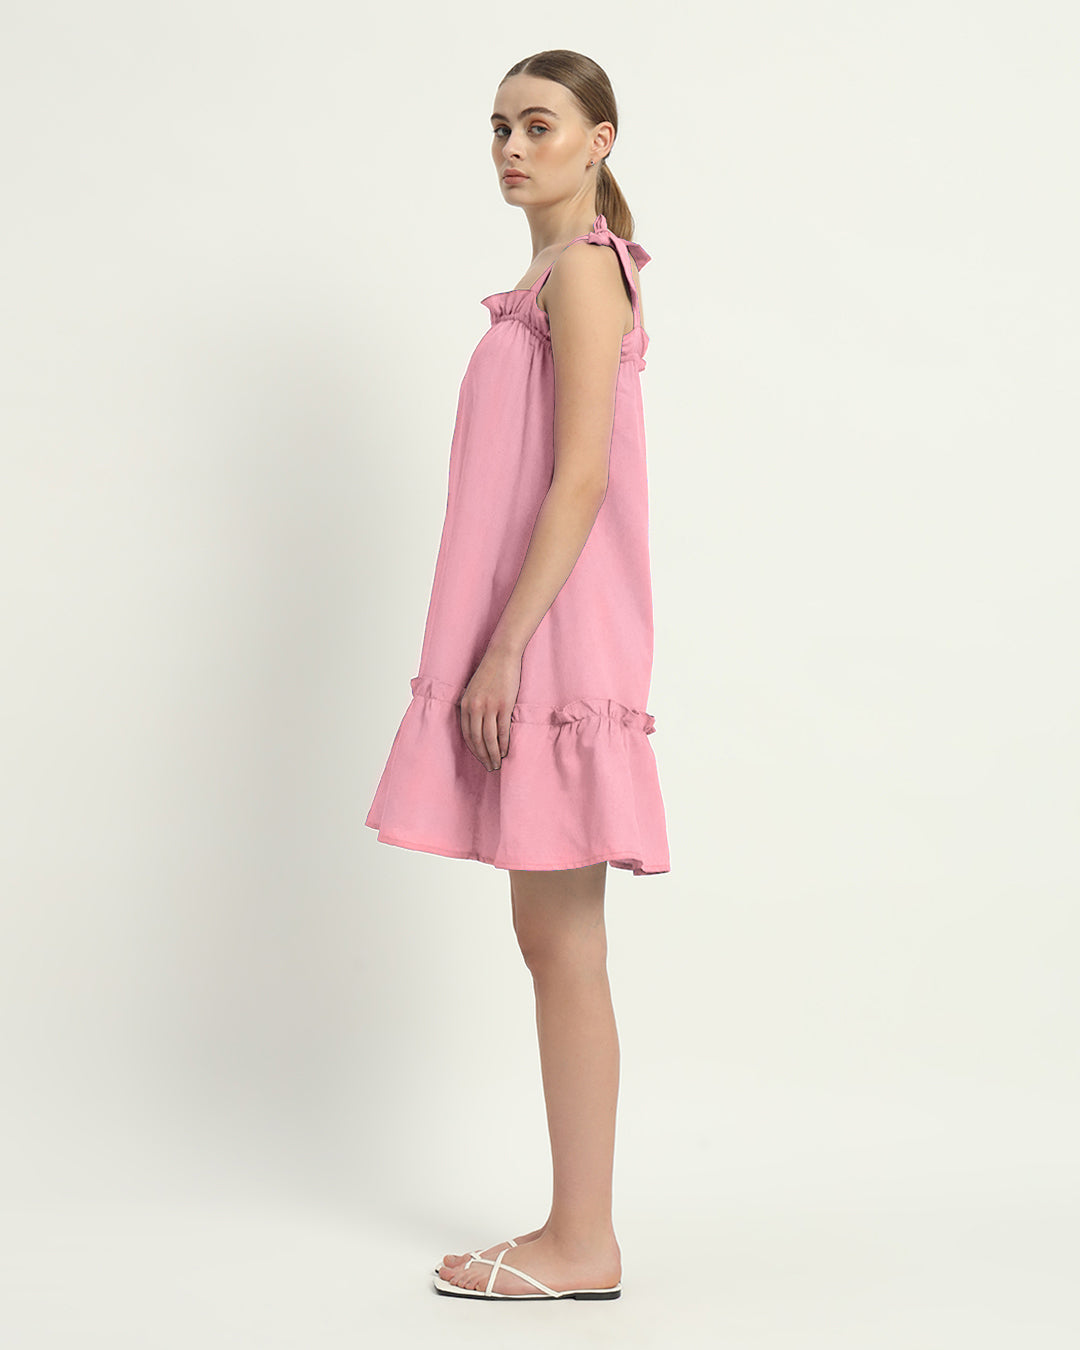 The Amalfi Fondant Pink Cotton Dress